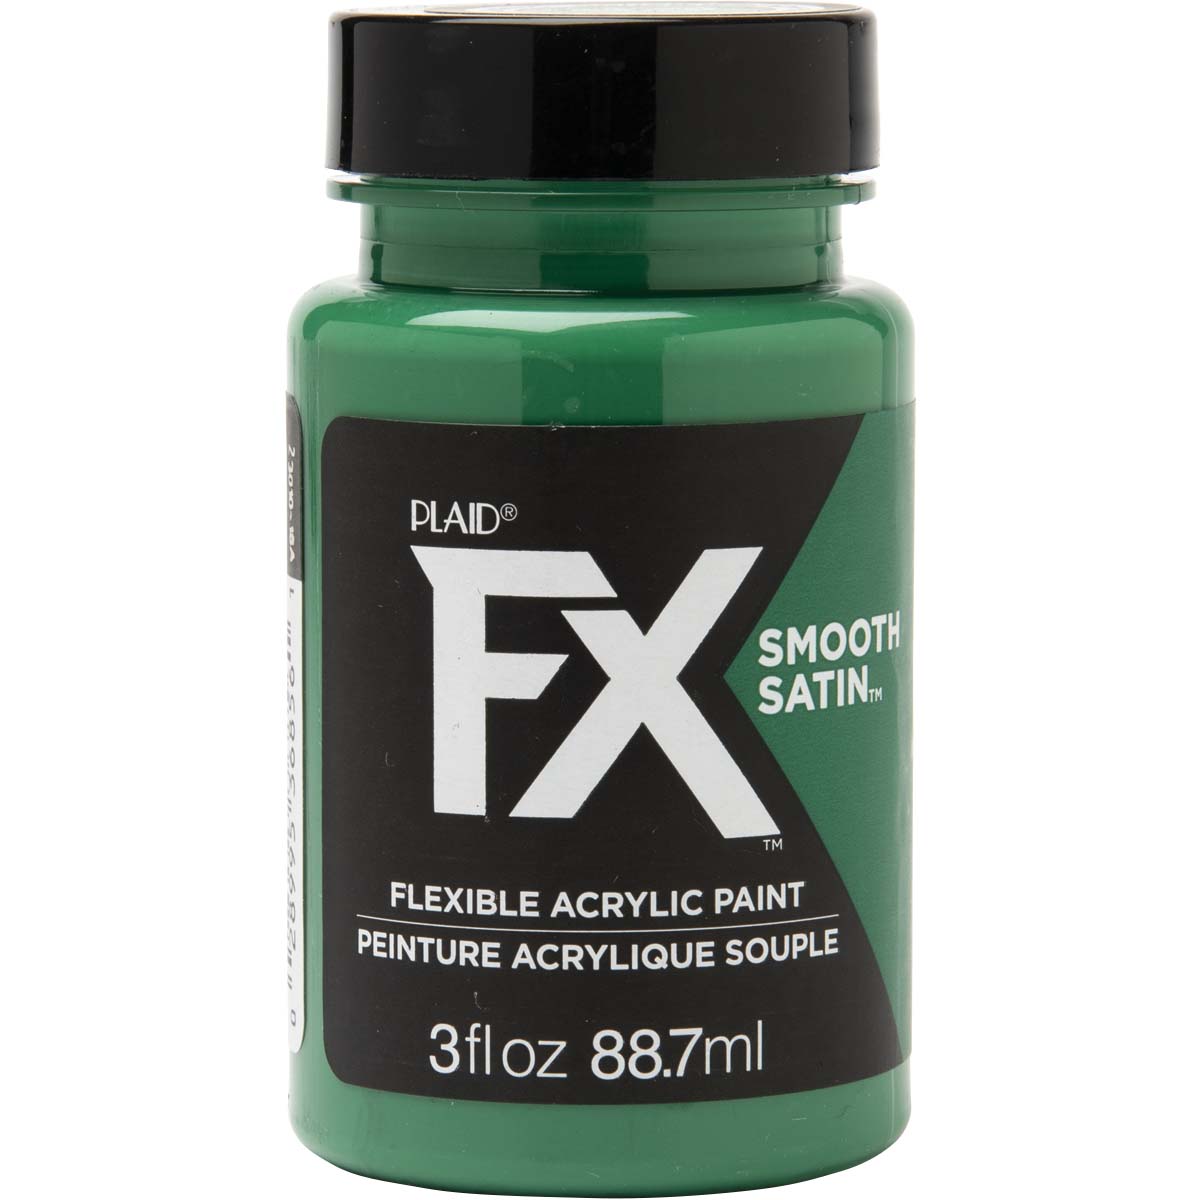 PlaidFX Smooth Satin Flexible Acrylic Paint - Green Empire, 3 oz. - 36856